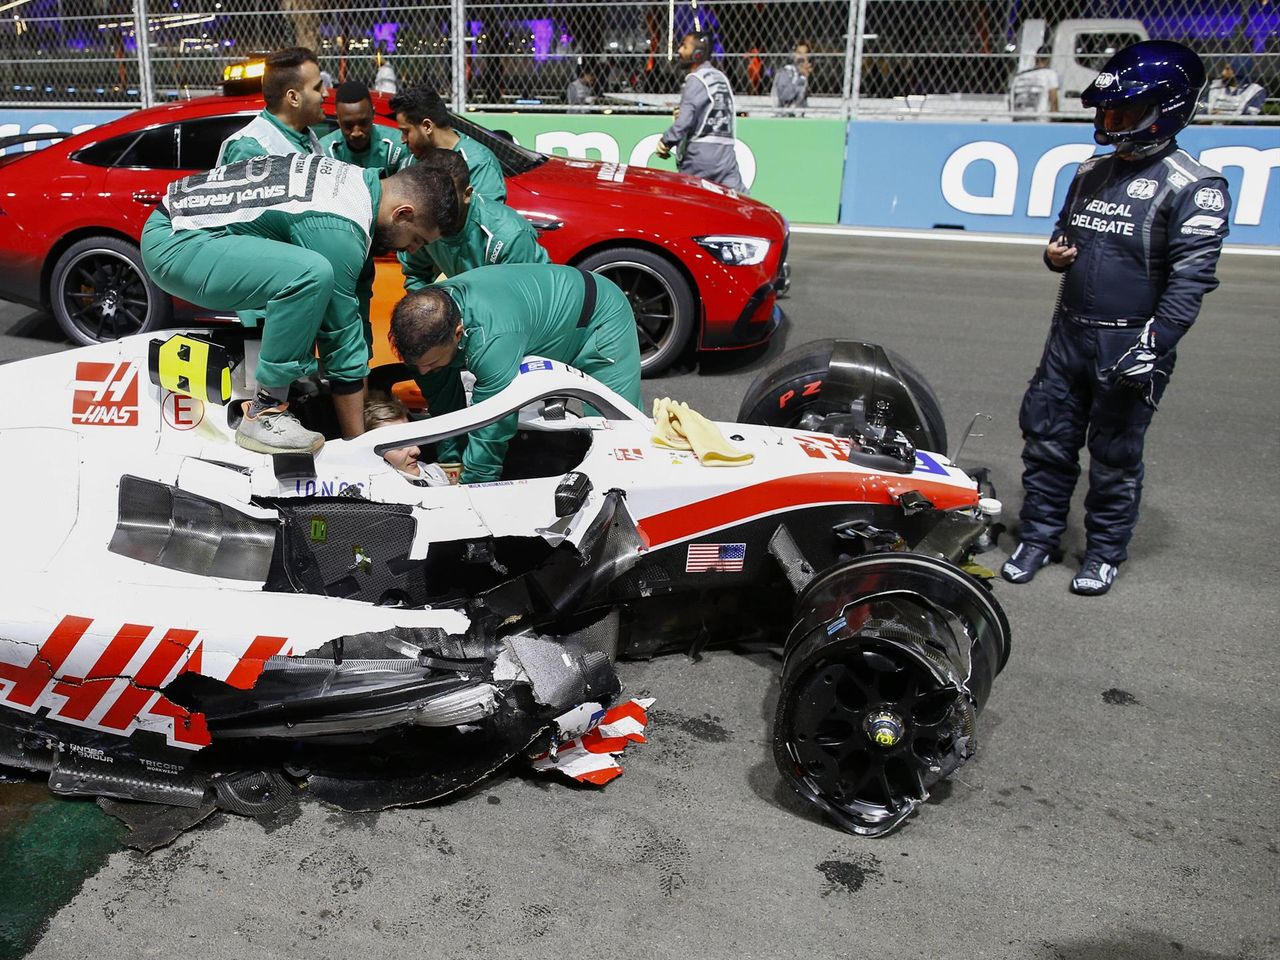 Mick Schumacher mit heftigem Crash bei Qualifying in Dschidda - die Bilder - Formel 1 Video